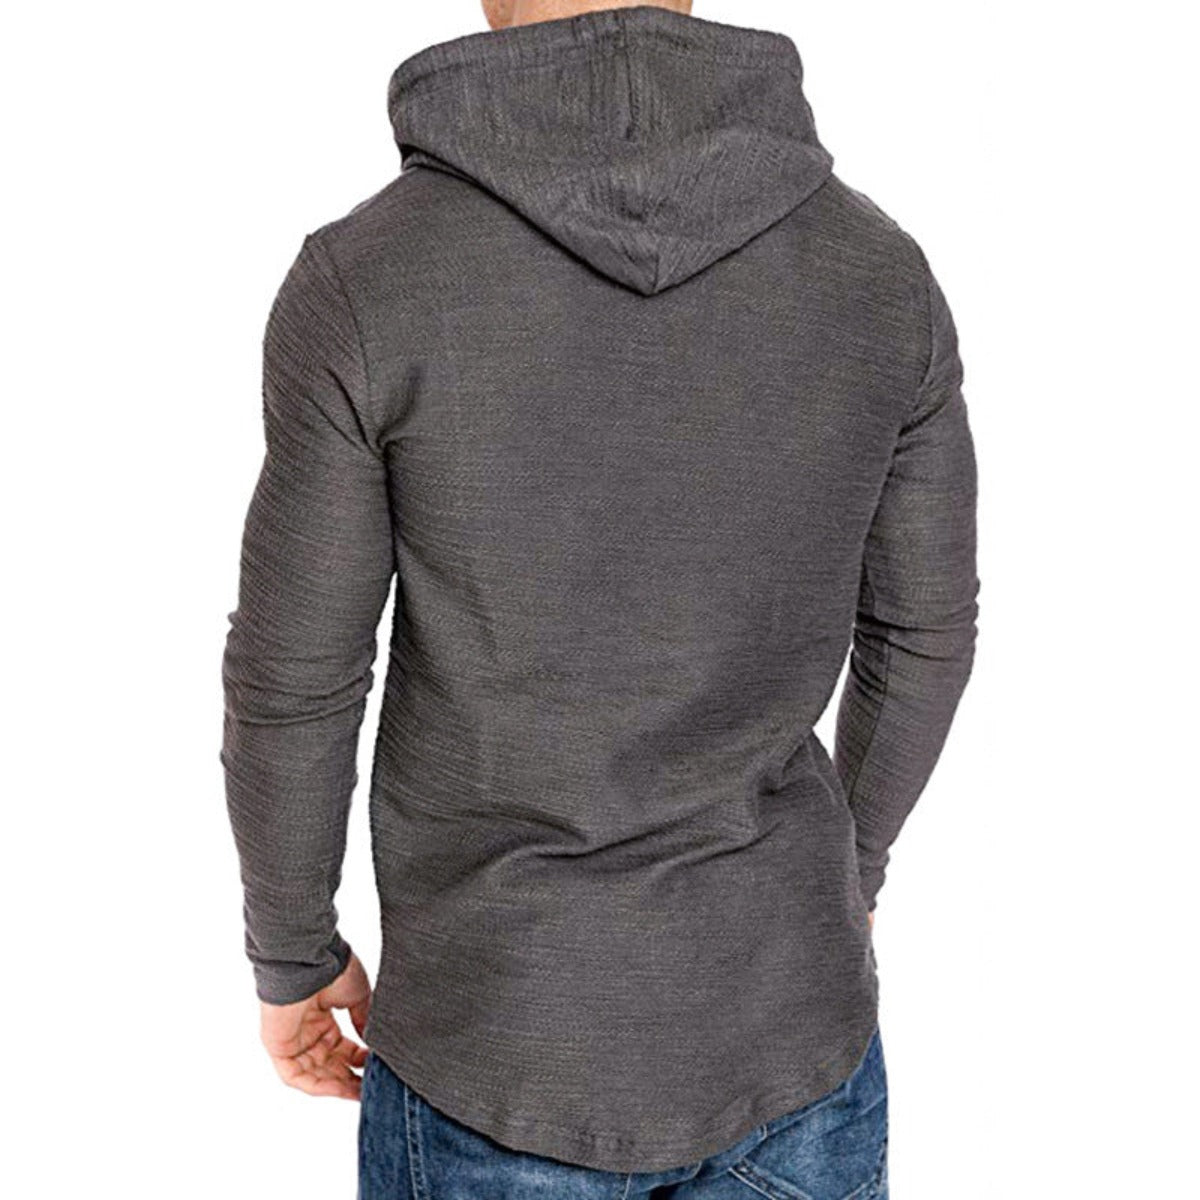 Men Hoodie Sweatshirt Casual Long Sleeve Slim Tops Gym T-shir LA ROSE BEAUTY